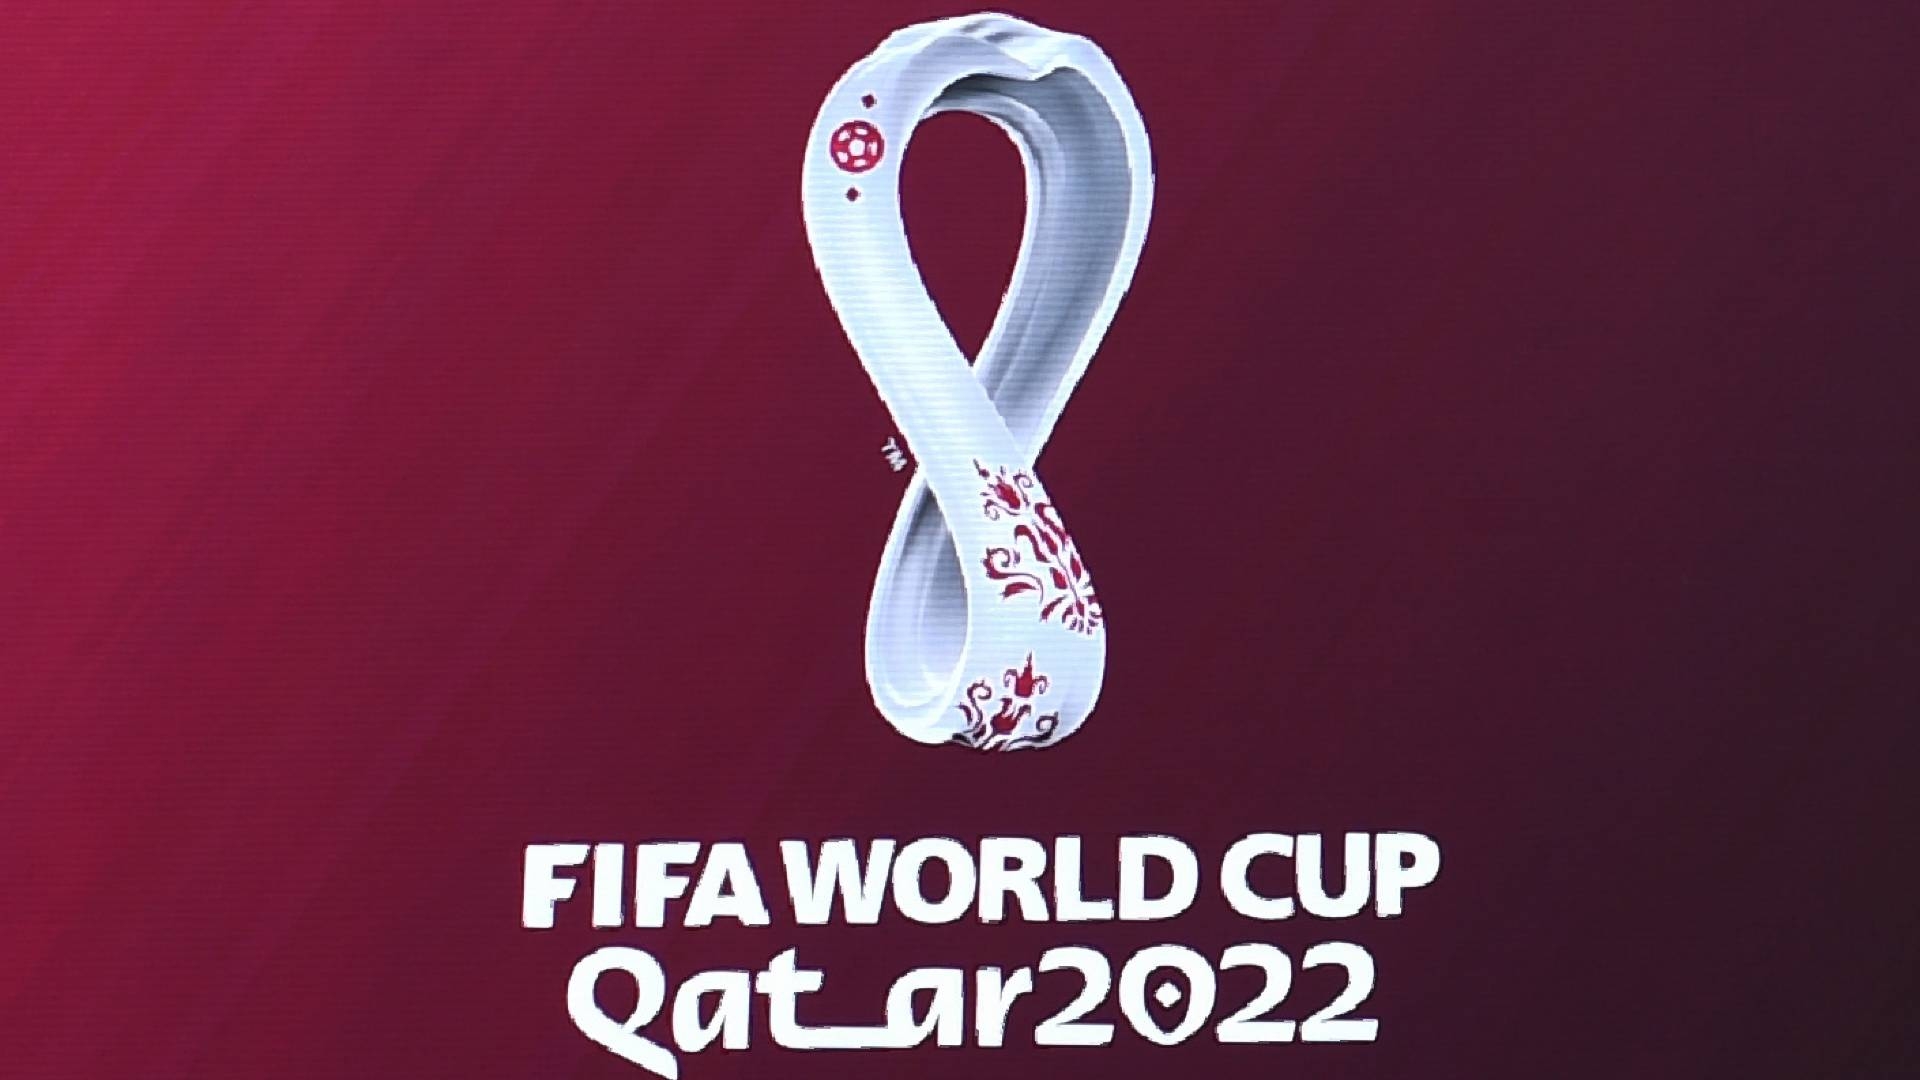 جدول كأس العالم 2022 بالكامل والقنوات الناقلة لمباريات كأس العالم قطر 2022